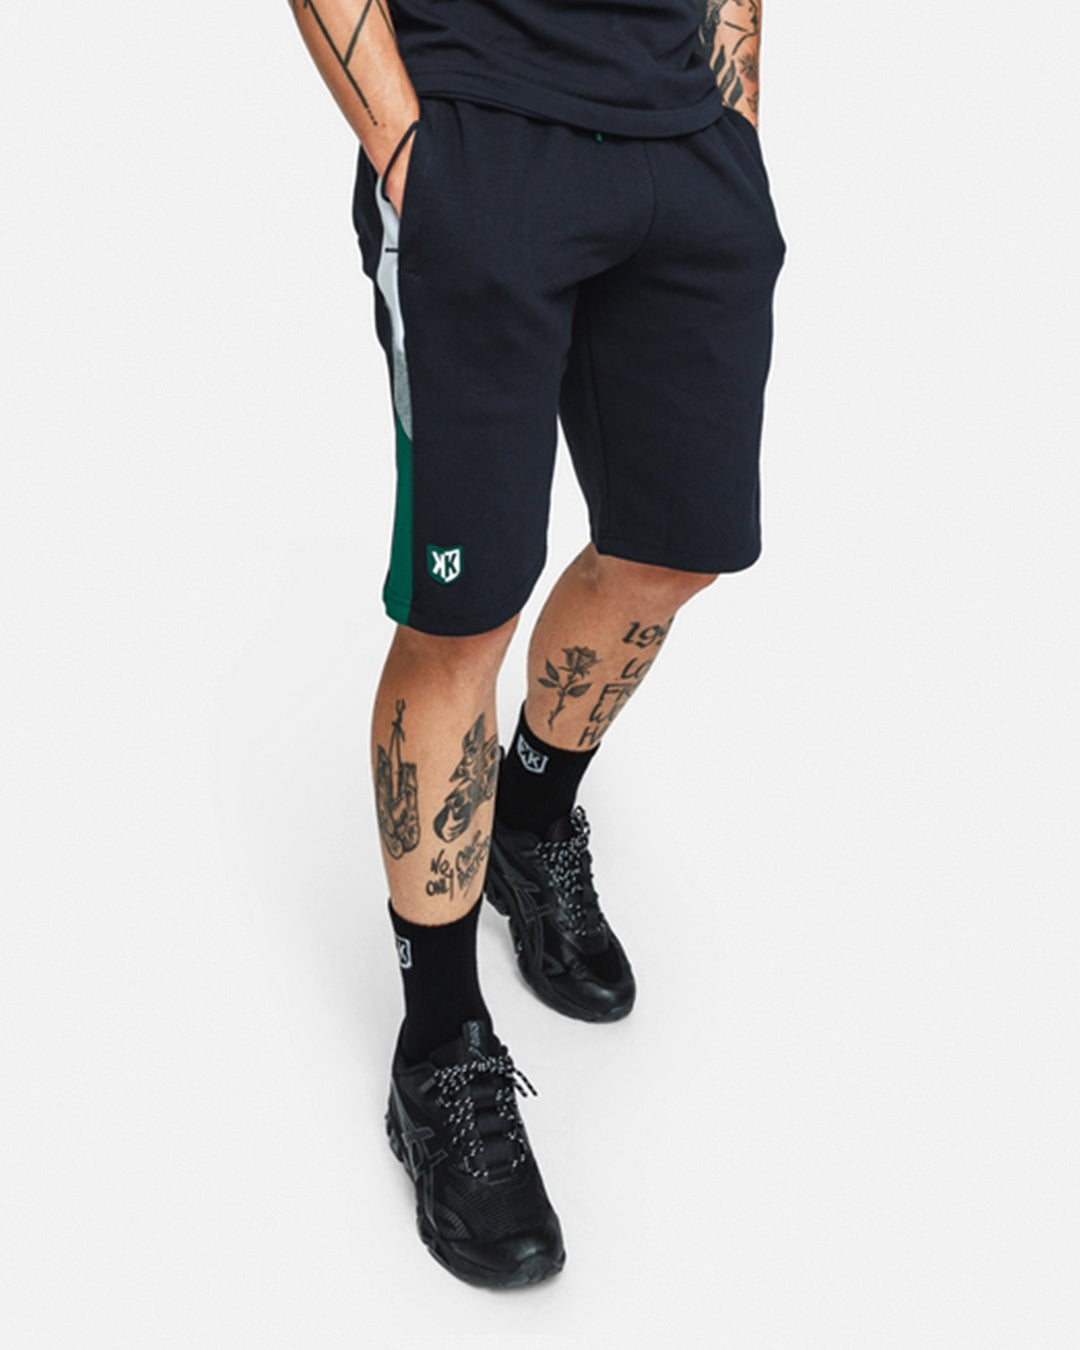 FK Sicarios V Shorts - Navy/Green/Grey